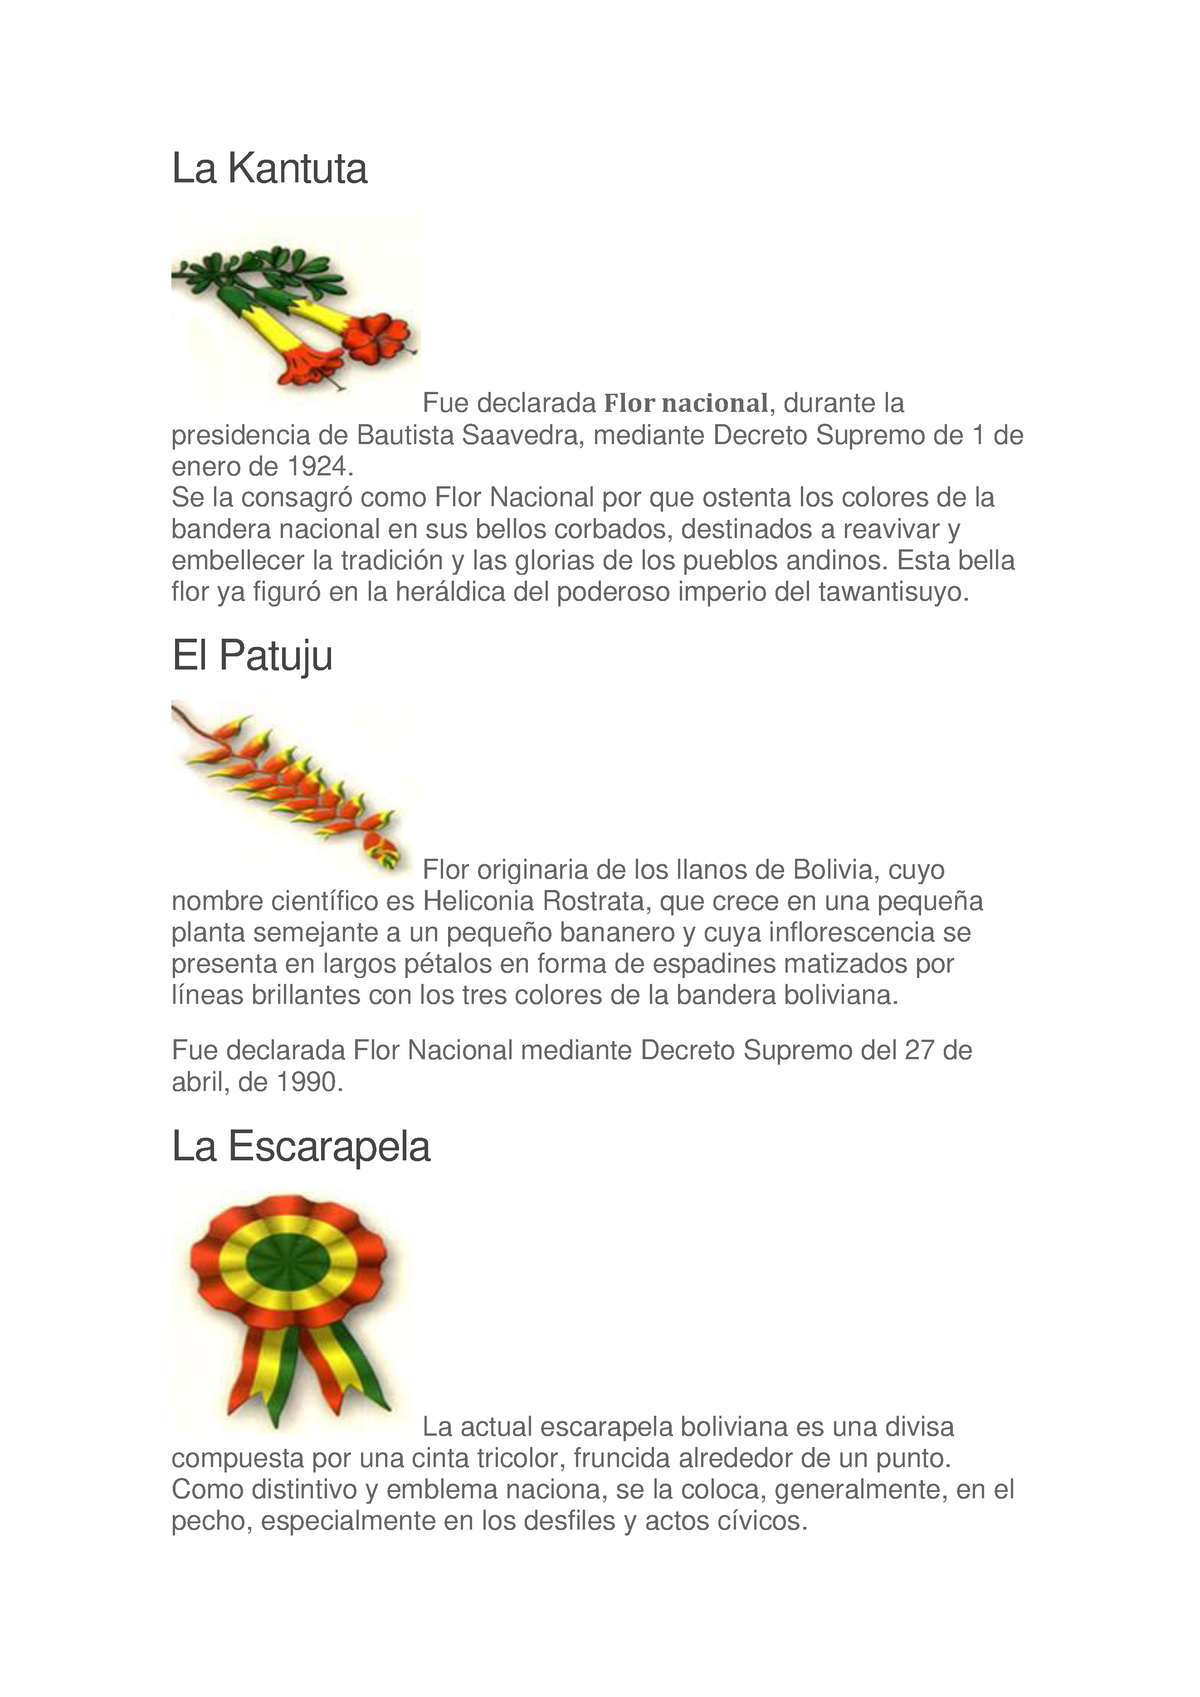 La Kantuta Son Simbolos Patrios De Bolivia La Kantuta Fue Declarada Flor Nacional Durante